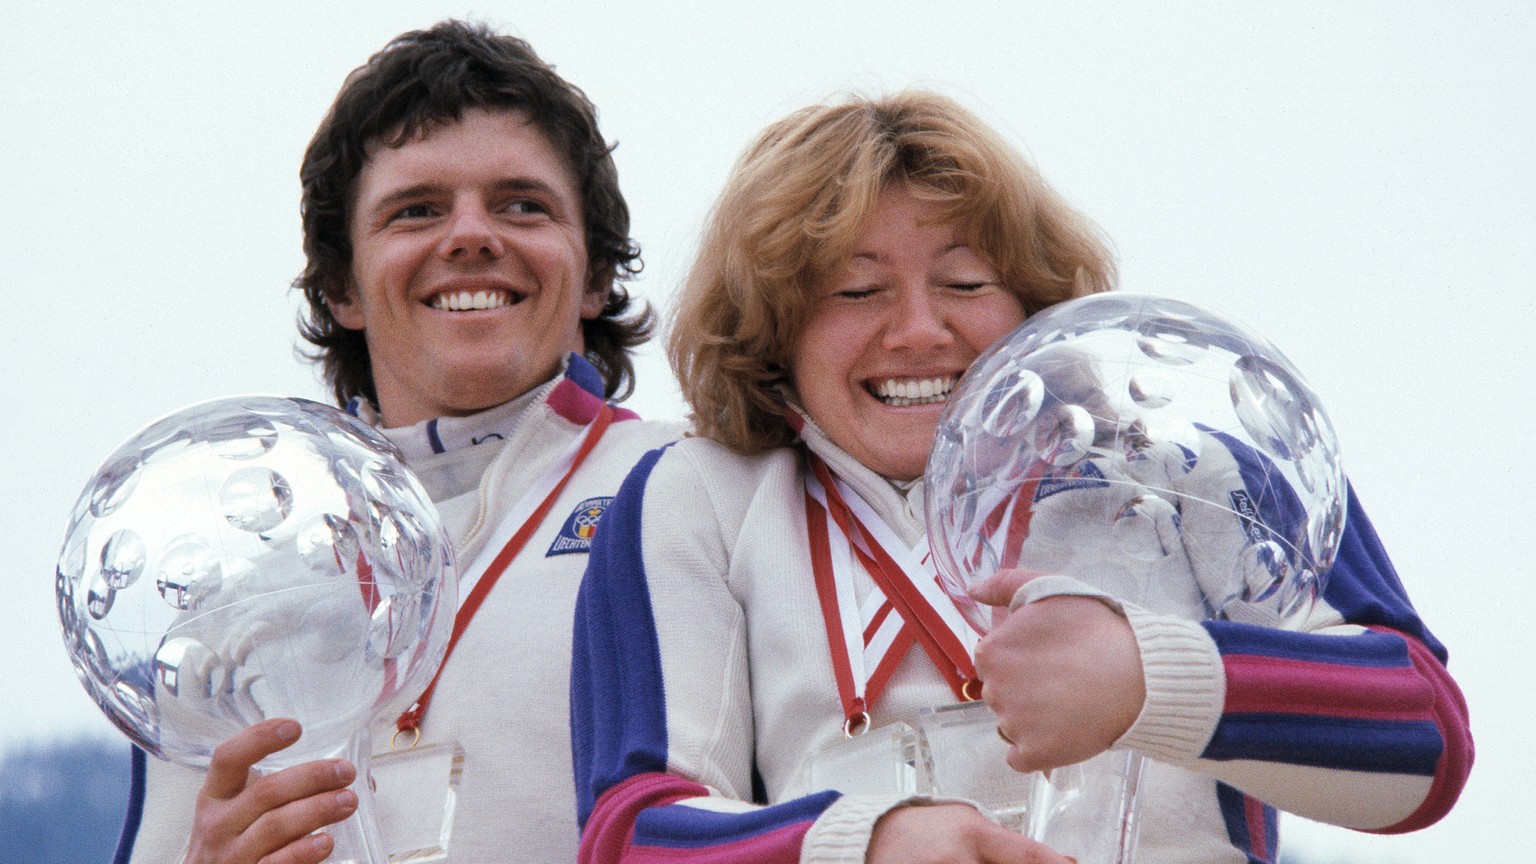 Hanni, rechts, und ihr Bruder Andreas Wenzel, links, zeigen am Ende der Skisaison 1980/1981 in Saalbach-Hinterglemm ihre grossen Kristallkugeln, welche sie fuer den Sieg im Gesamtweltcup erhielten. (K ...